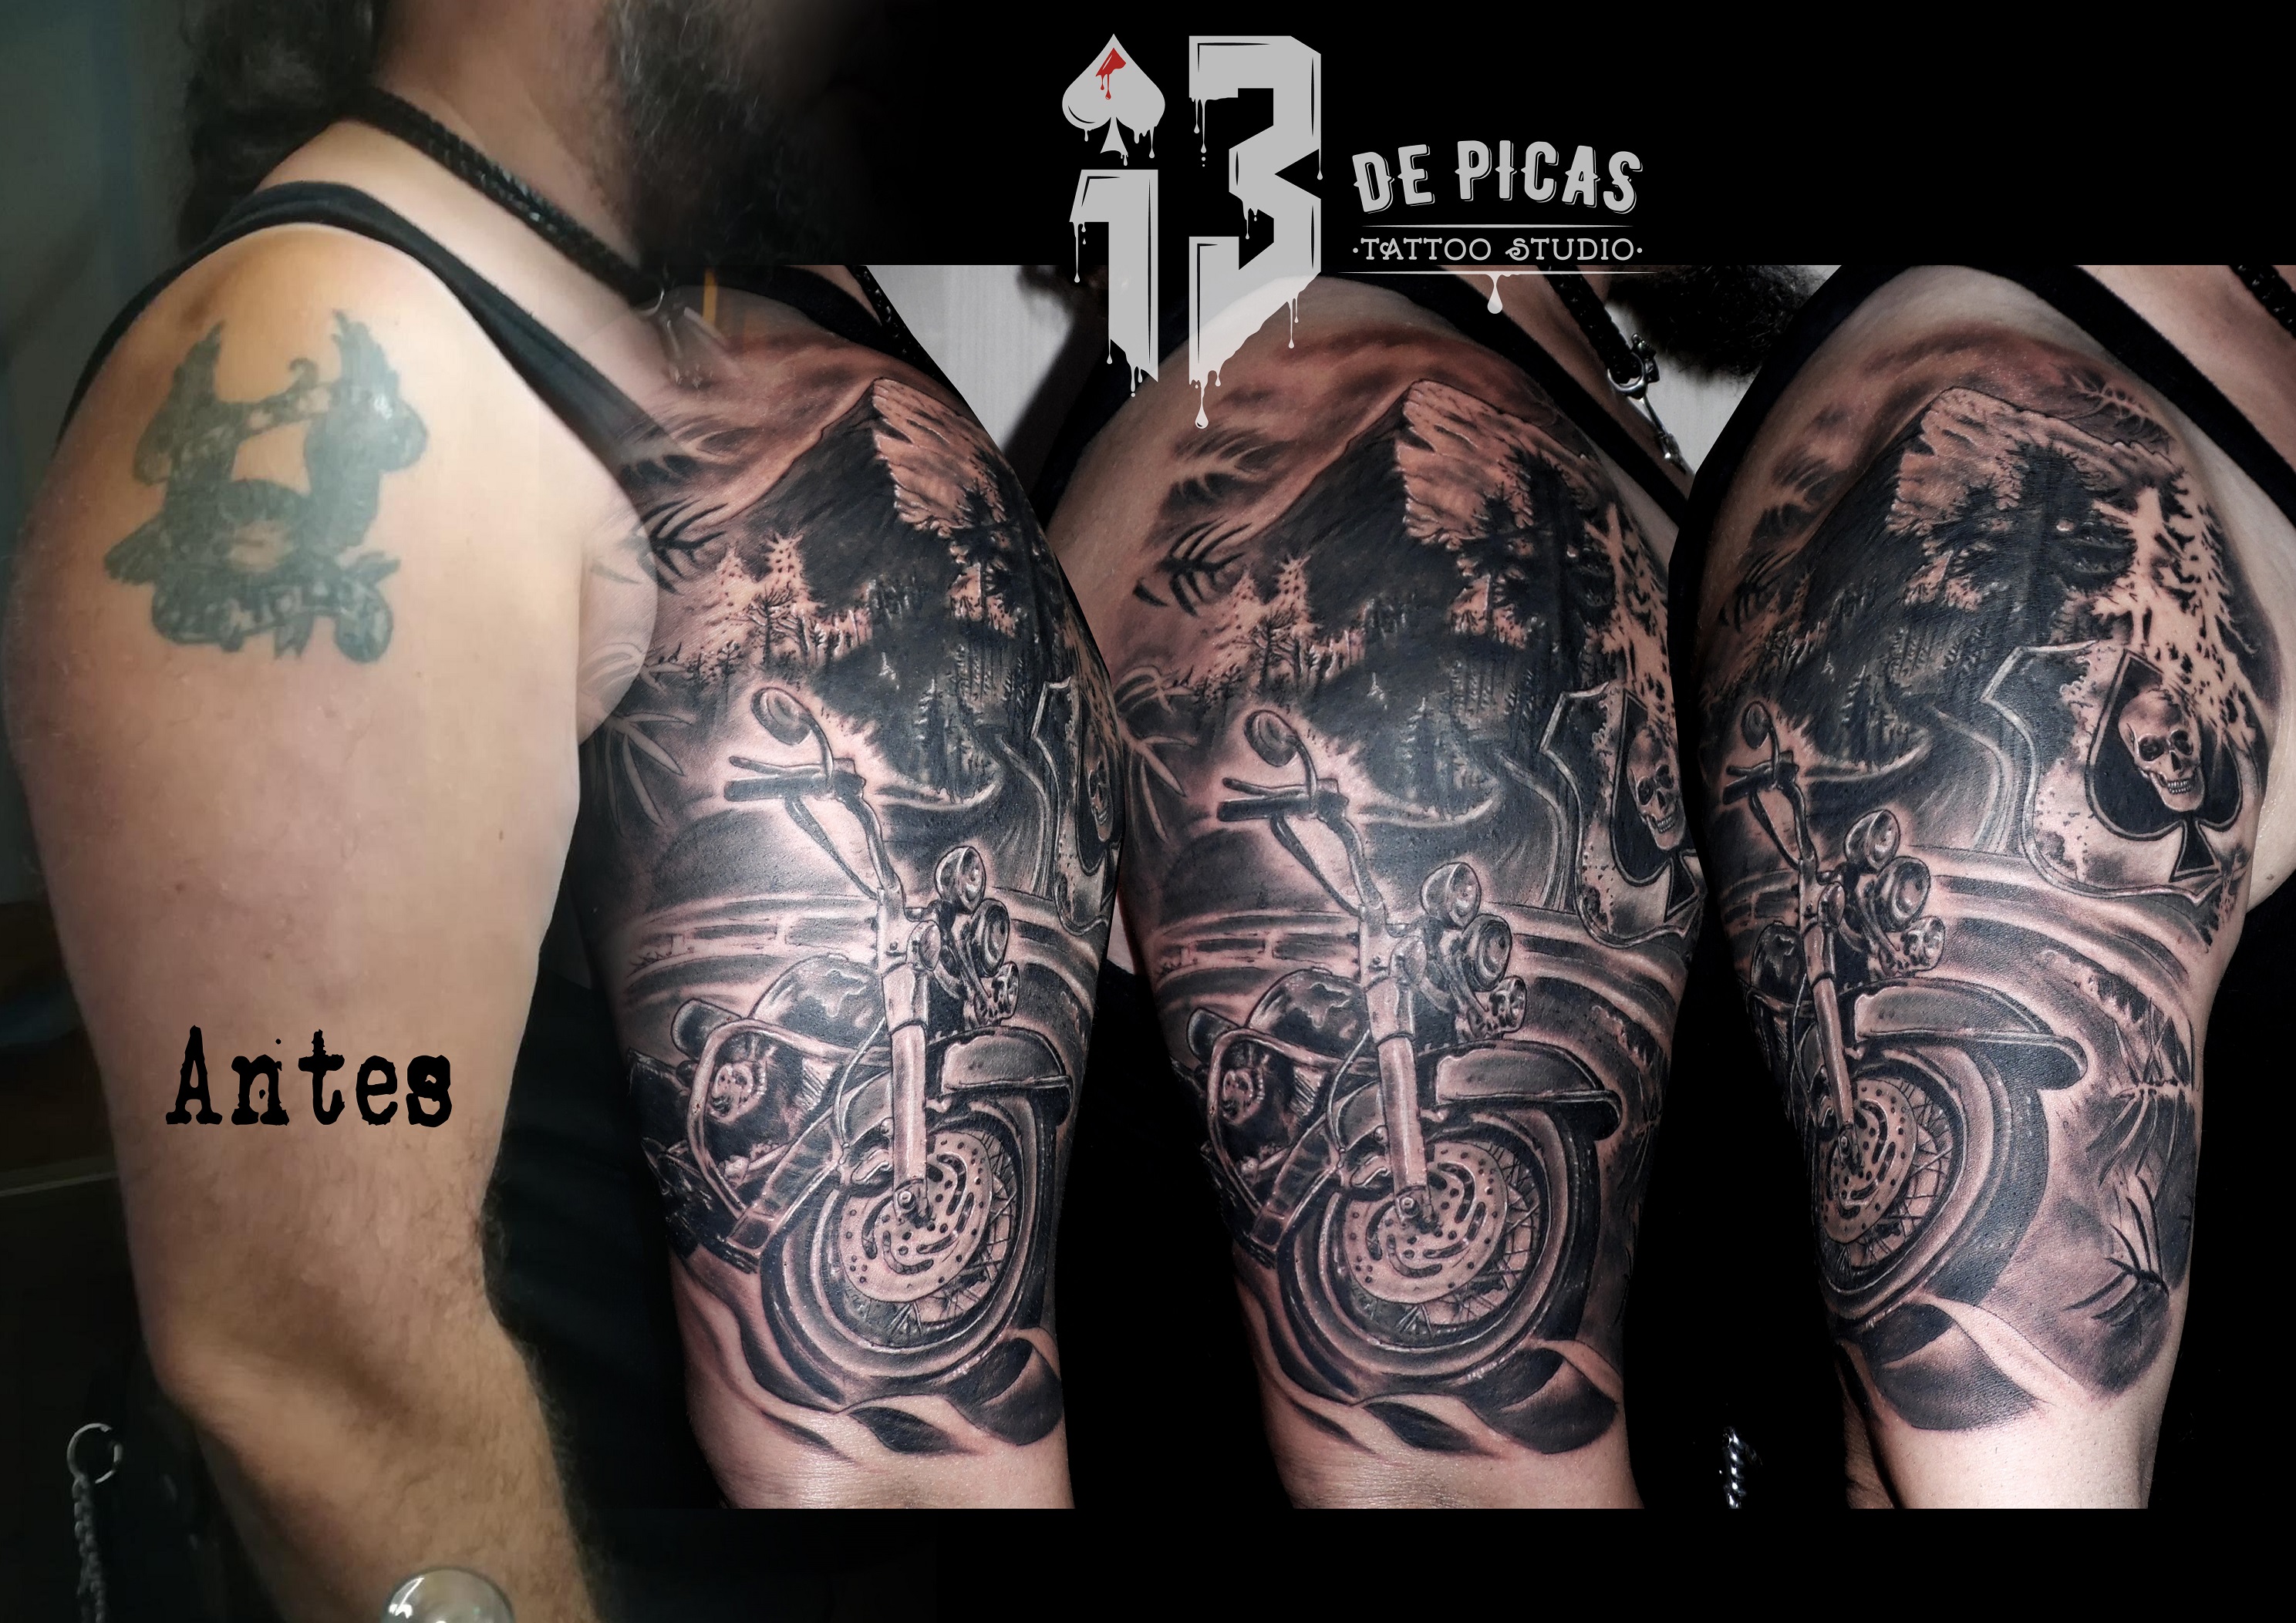 Cover Tatuaje - 13depicas.com♤STUDIO TATTOO♤PIERCING♤SHOP♤ JACA-Huesca